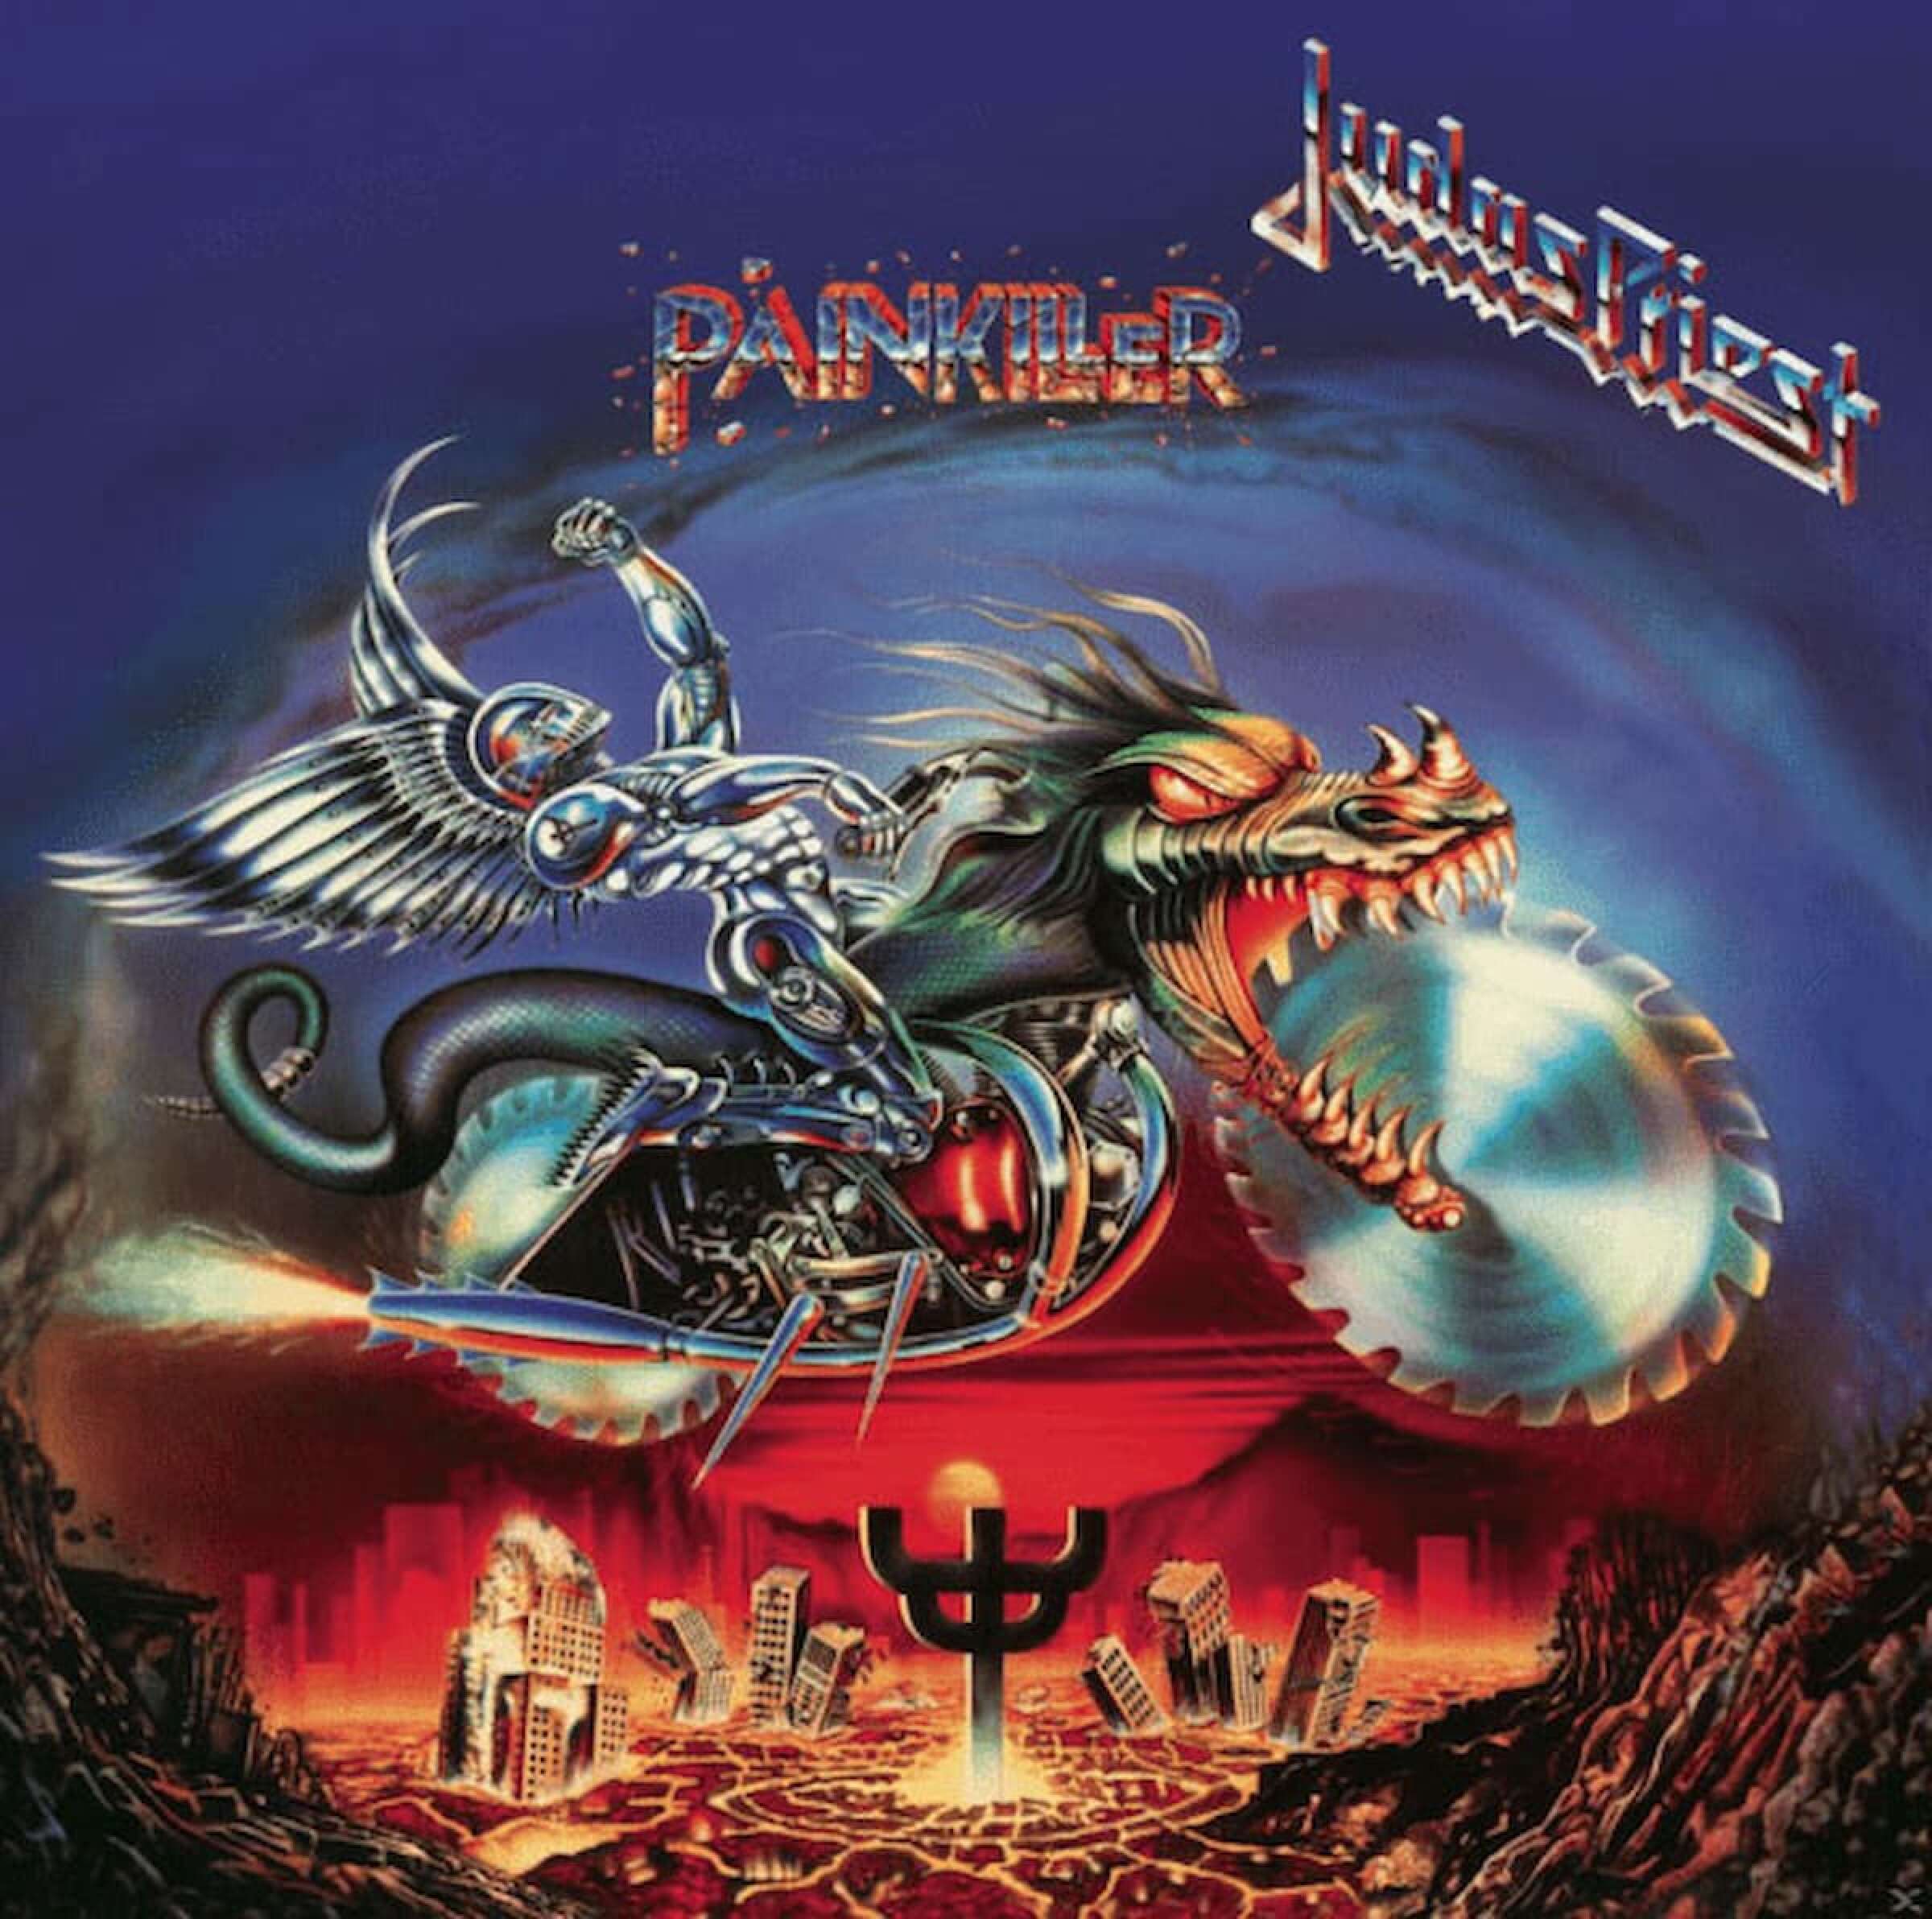 Judas Priest Album Painliller